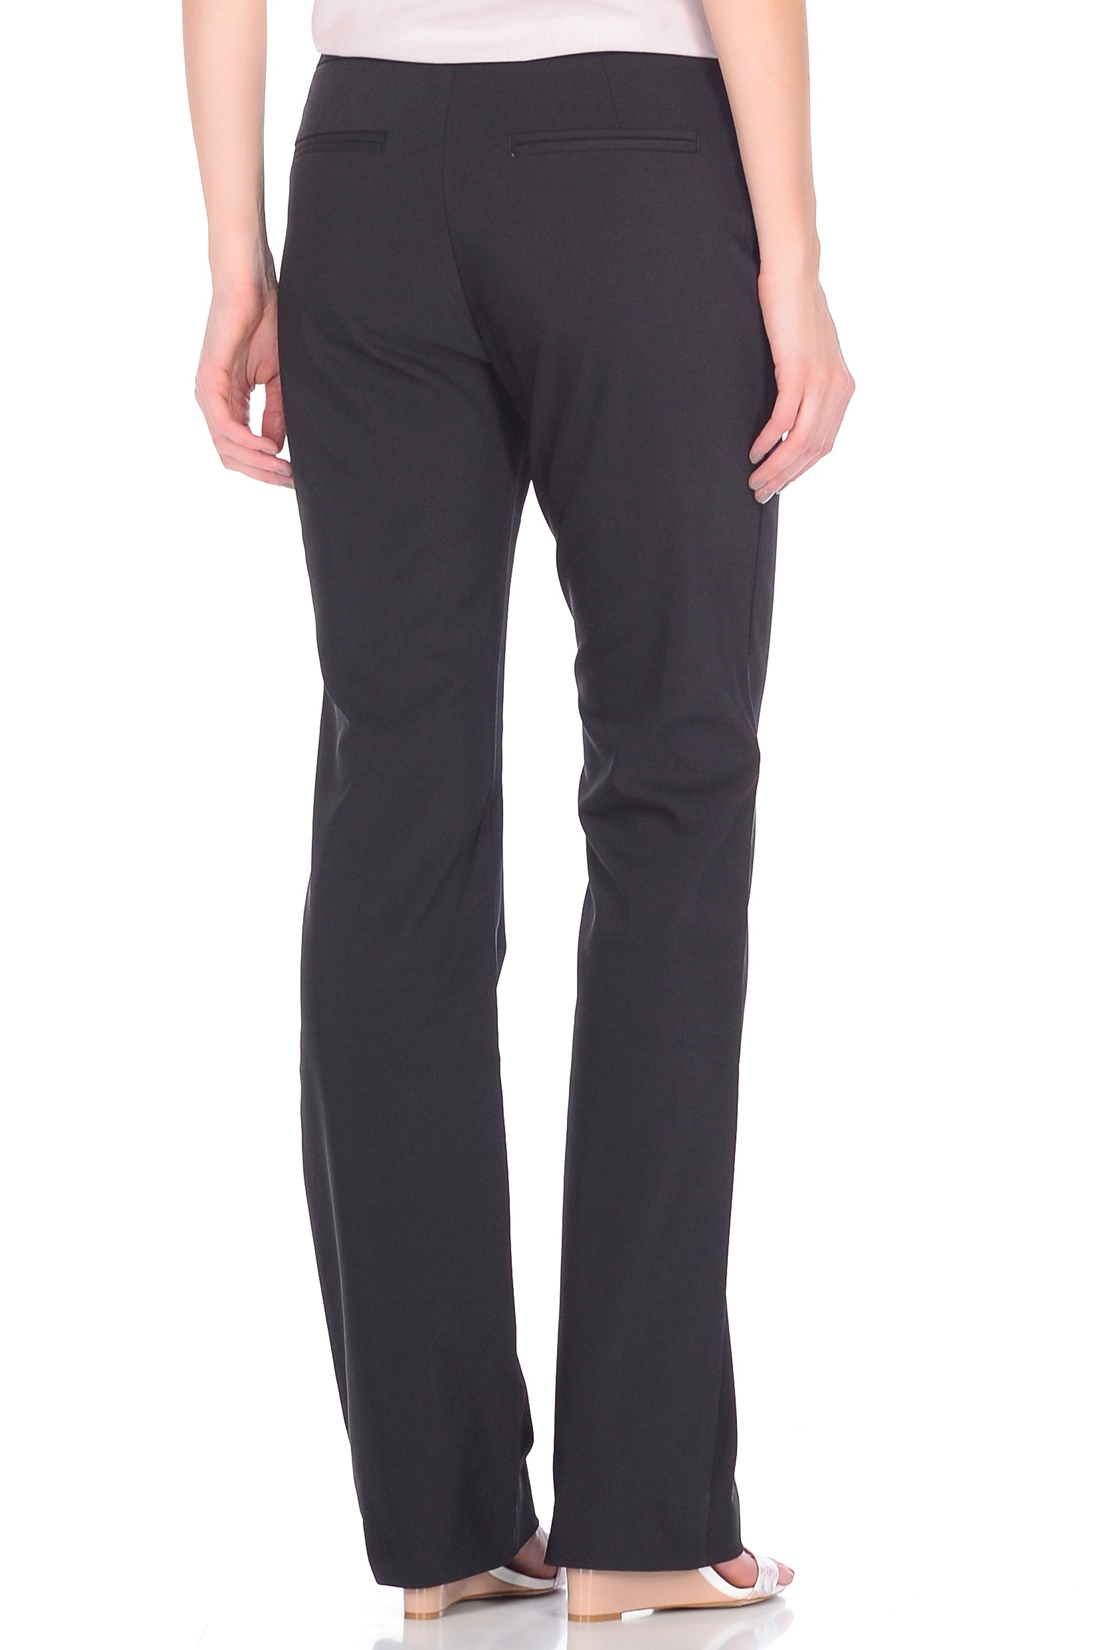 Классические брюки-клёш (арт. baon B298009), размер XS, цвет черный Классические брюки-клёш (арт. baon B298009) - фото 2